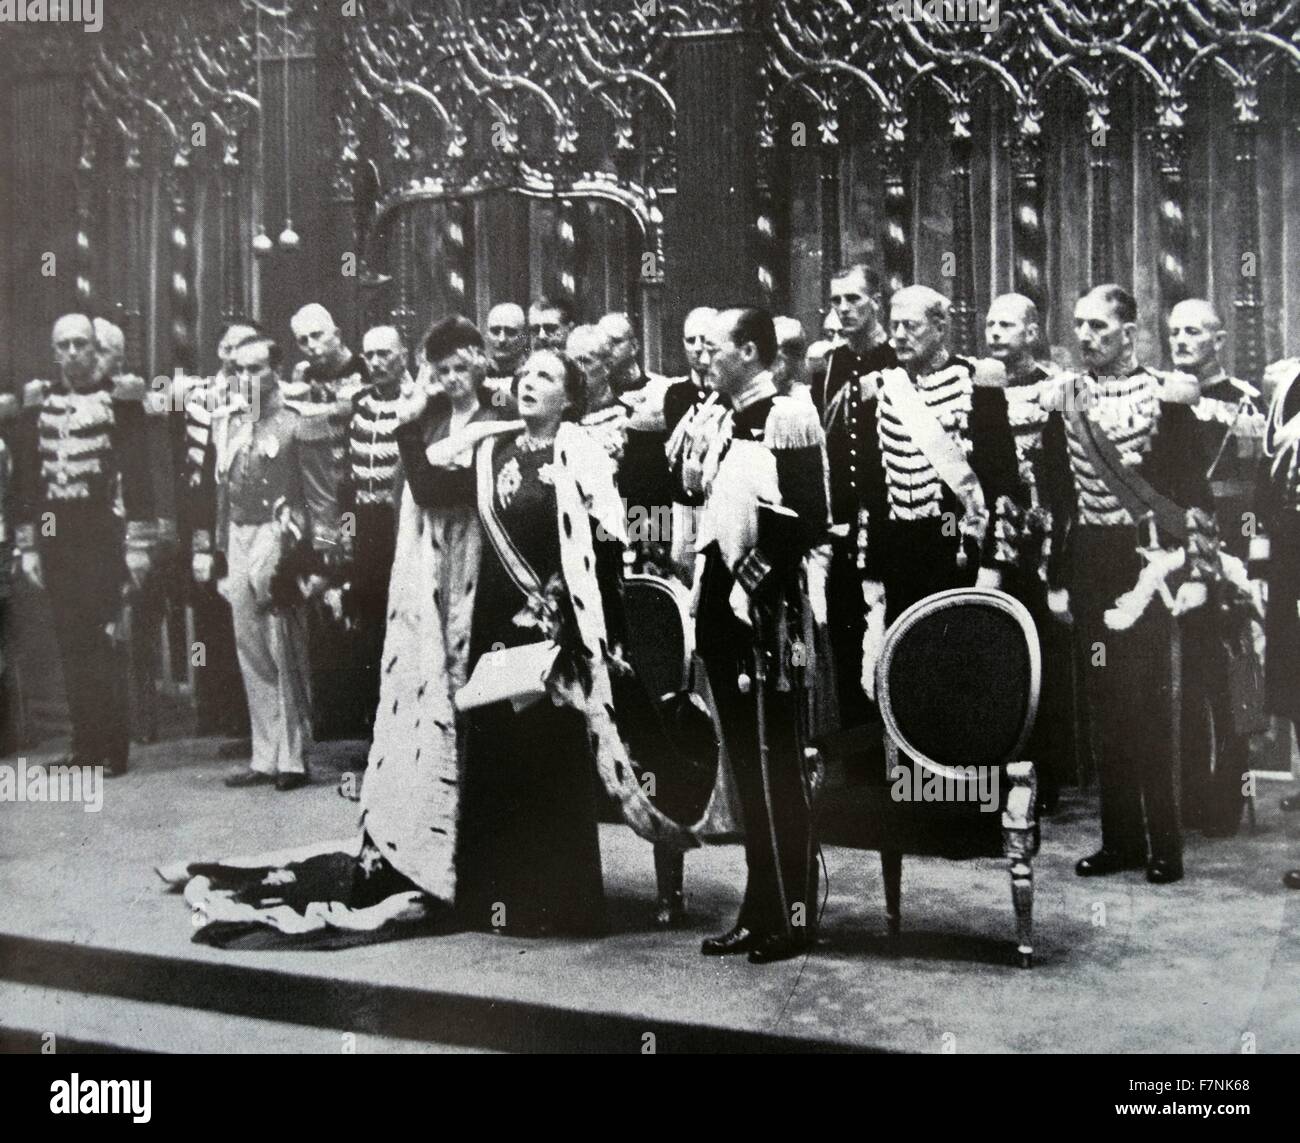 La reine Juliana des Pays-Bas,portant le tout nouveau manteau de couronnement prend son serment du couronnement à côté du prince Bernhard 1948 Banque D'Images